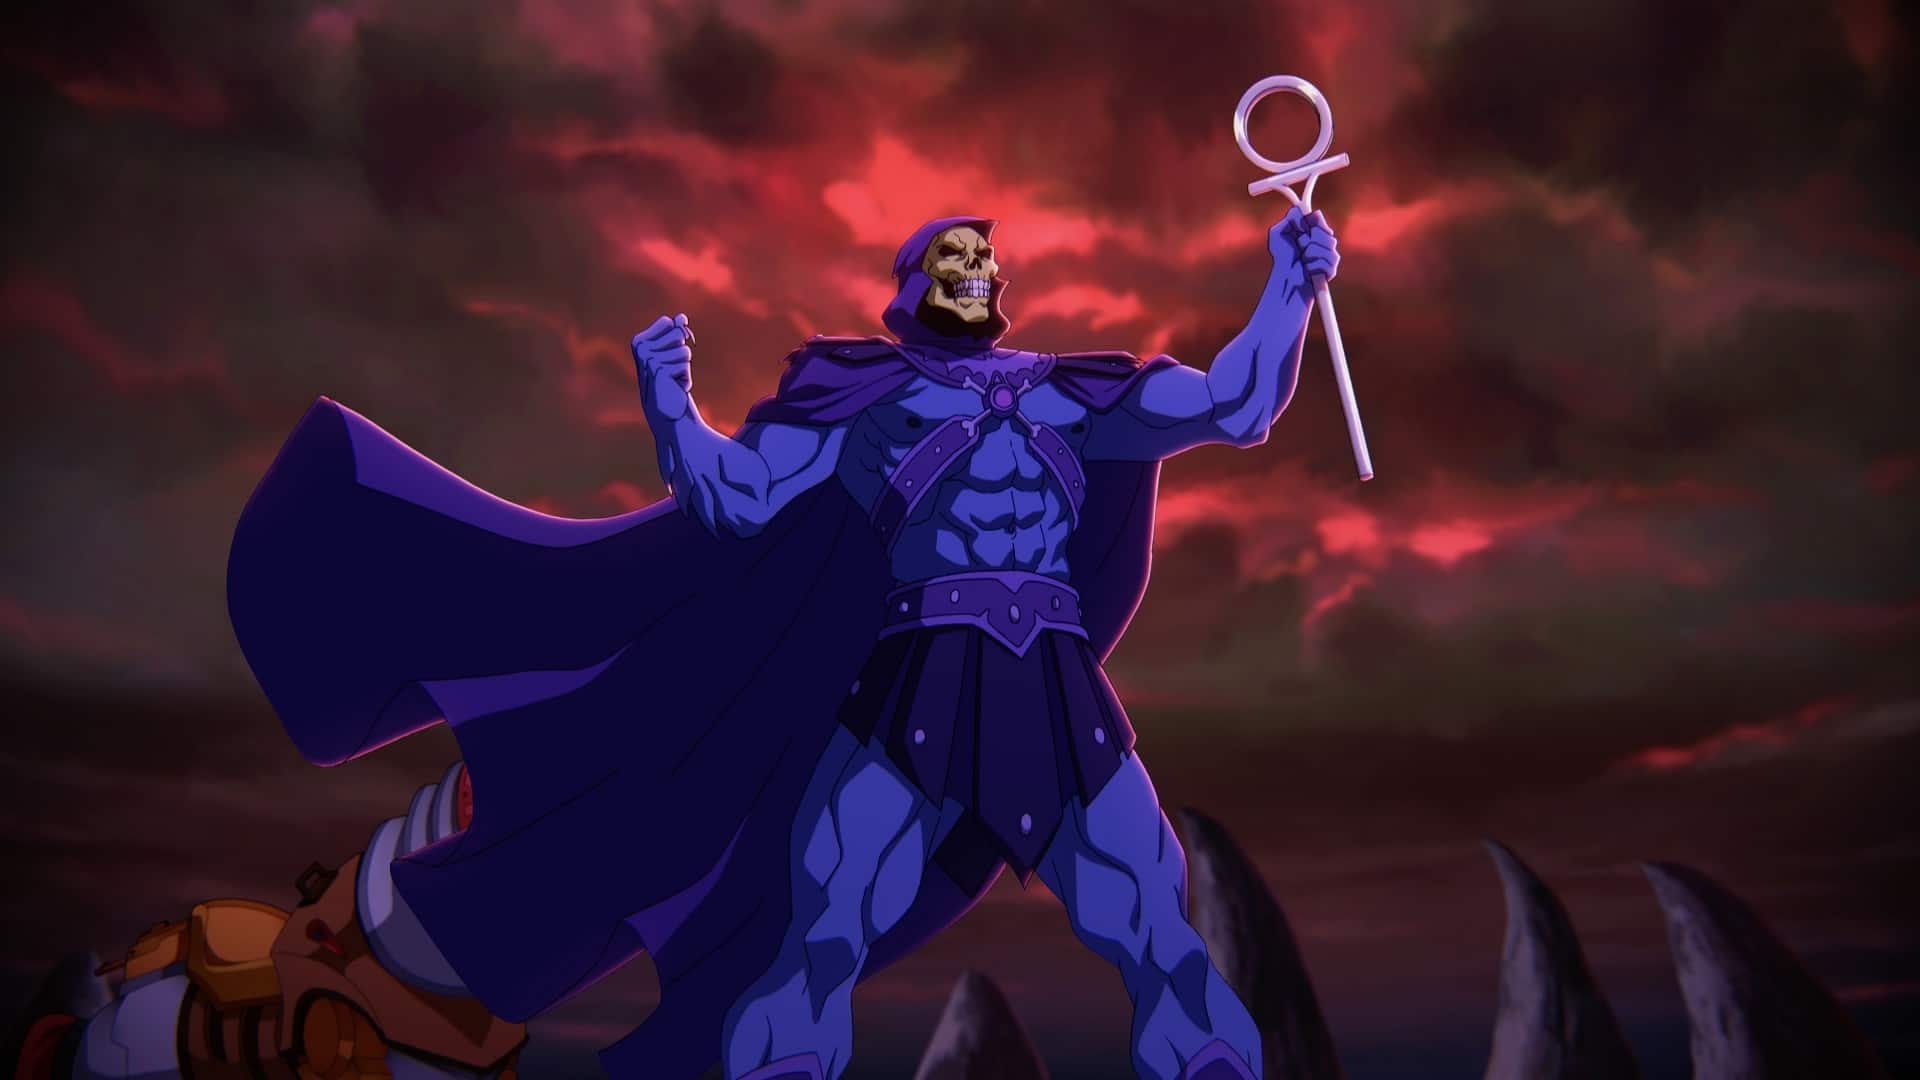 Mestres do Universo': anime do He-Man ganha novo trailer - Olhar Digital